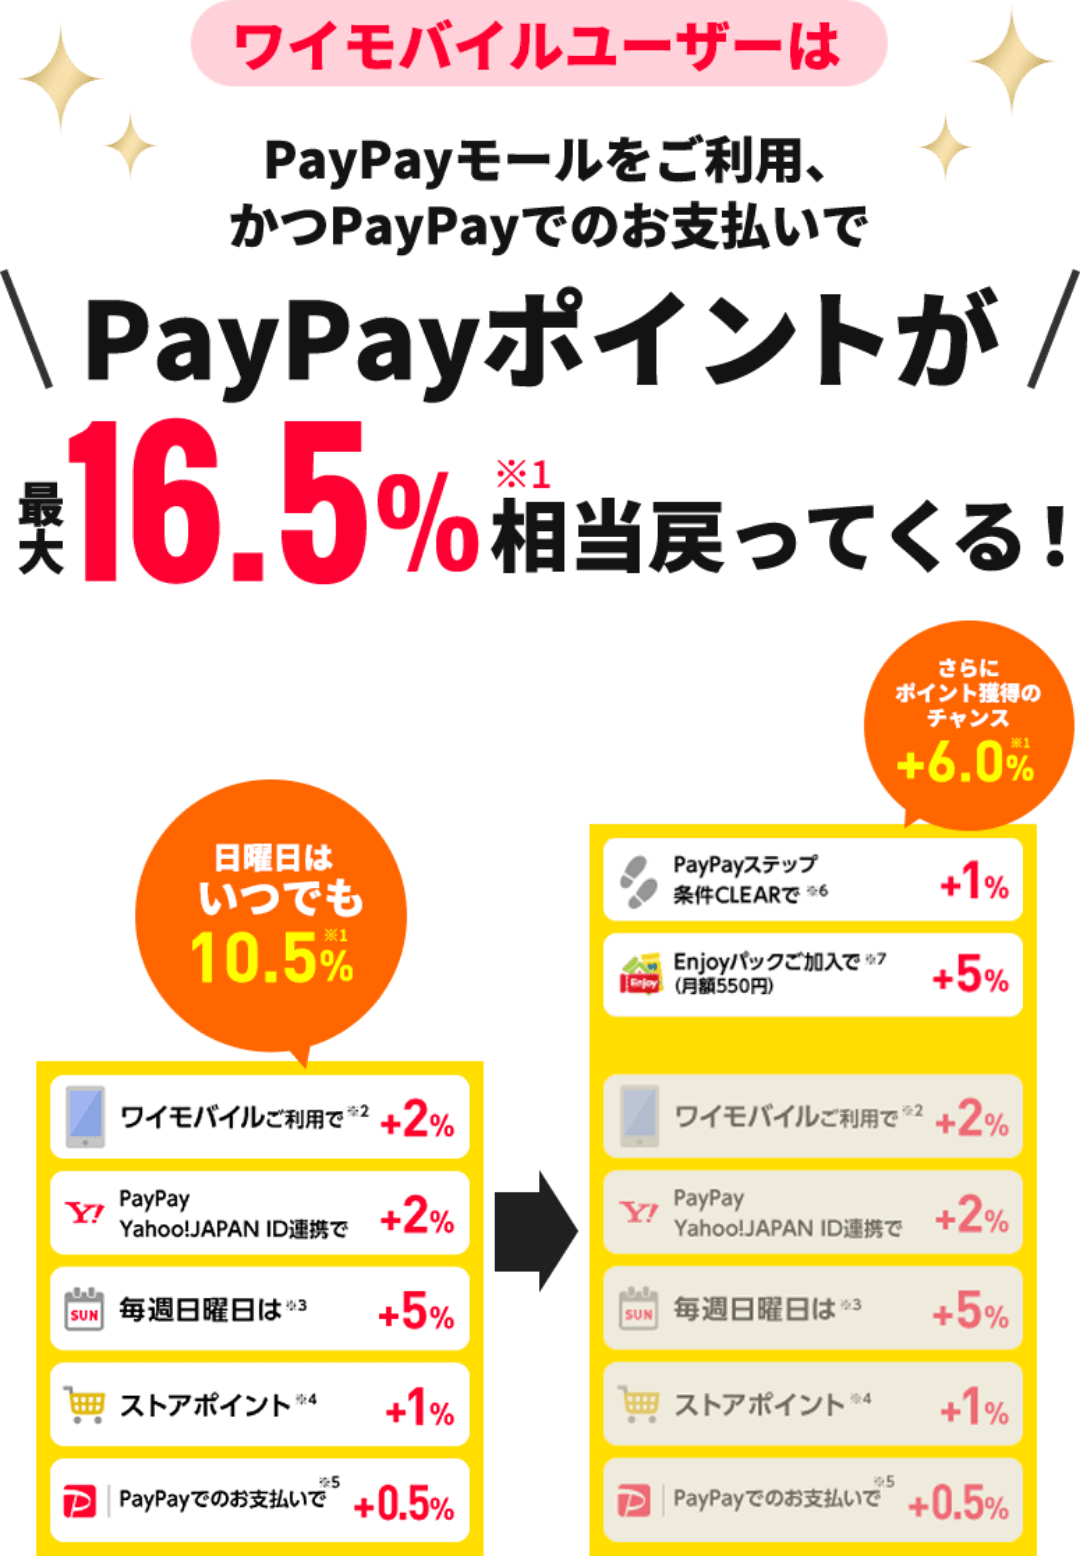 ワイモバイルユーザーは PayPayモールをご利用、かつPayPayでのお支払いで PayPayポイントが最大16.5%相当戻ってくる